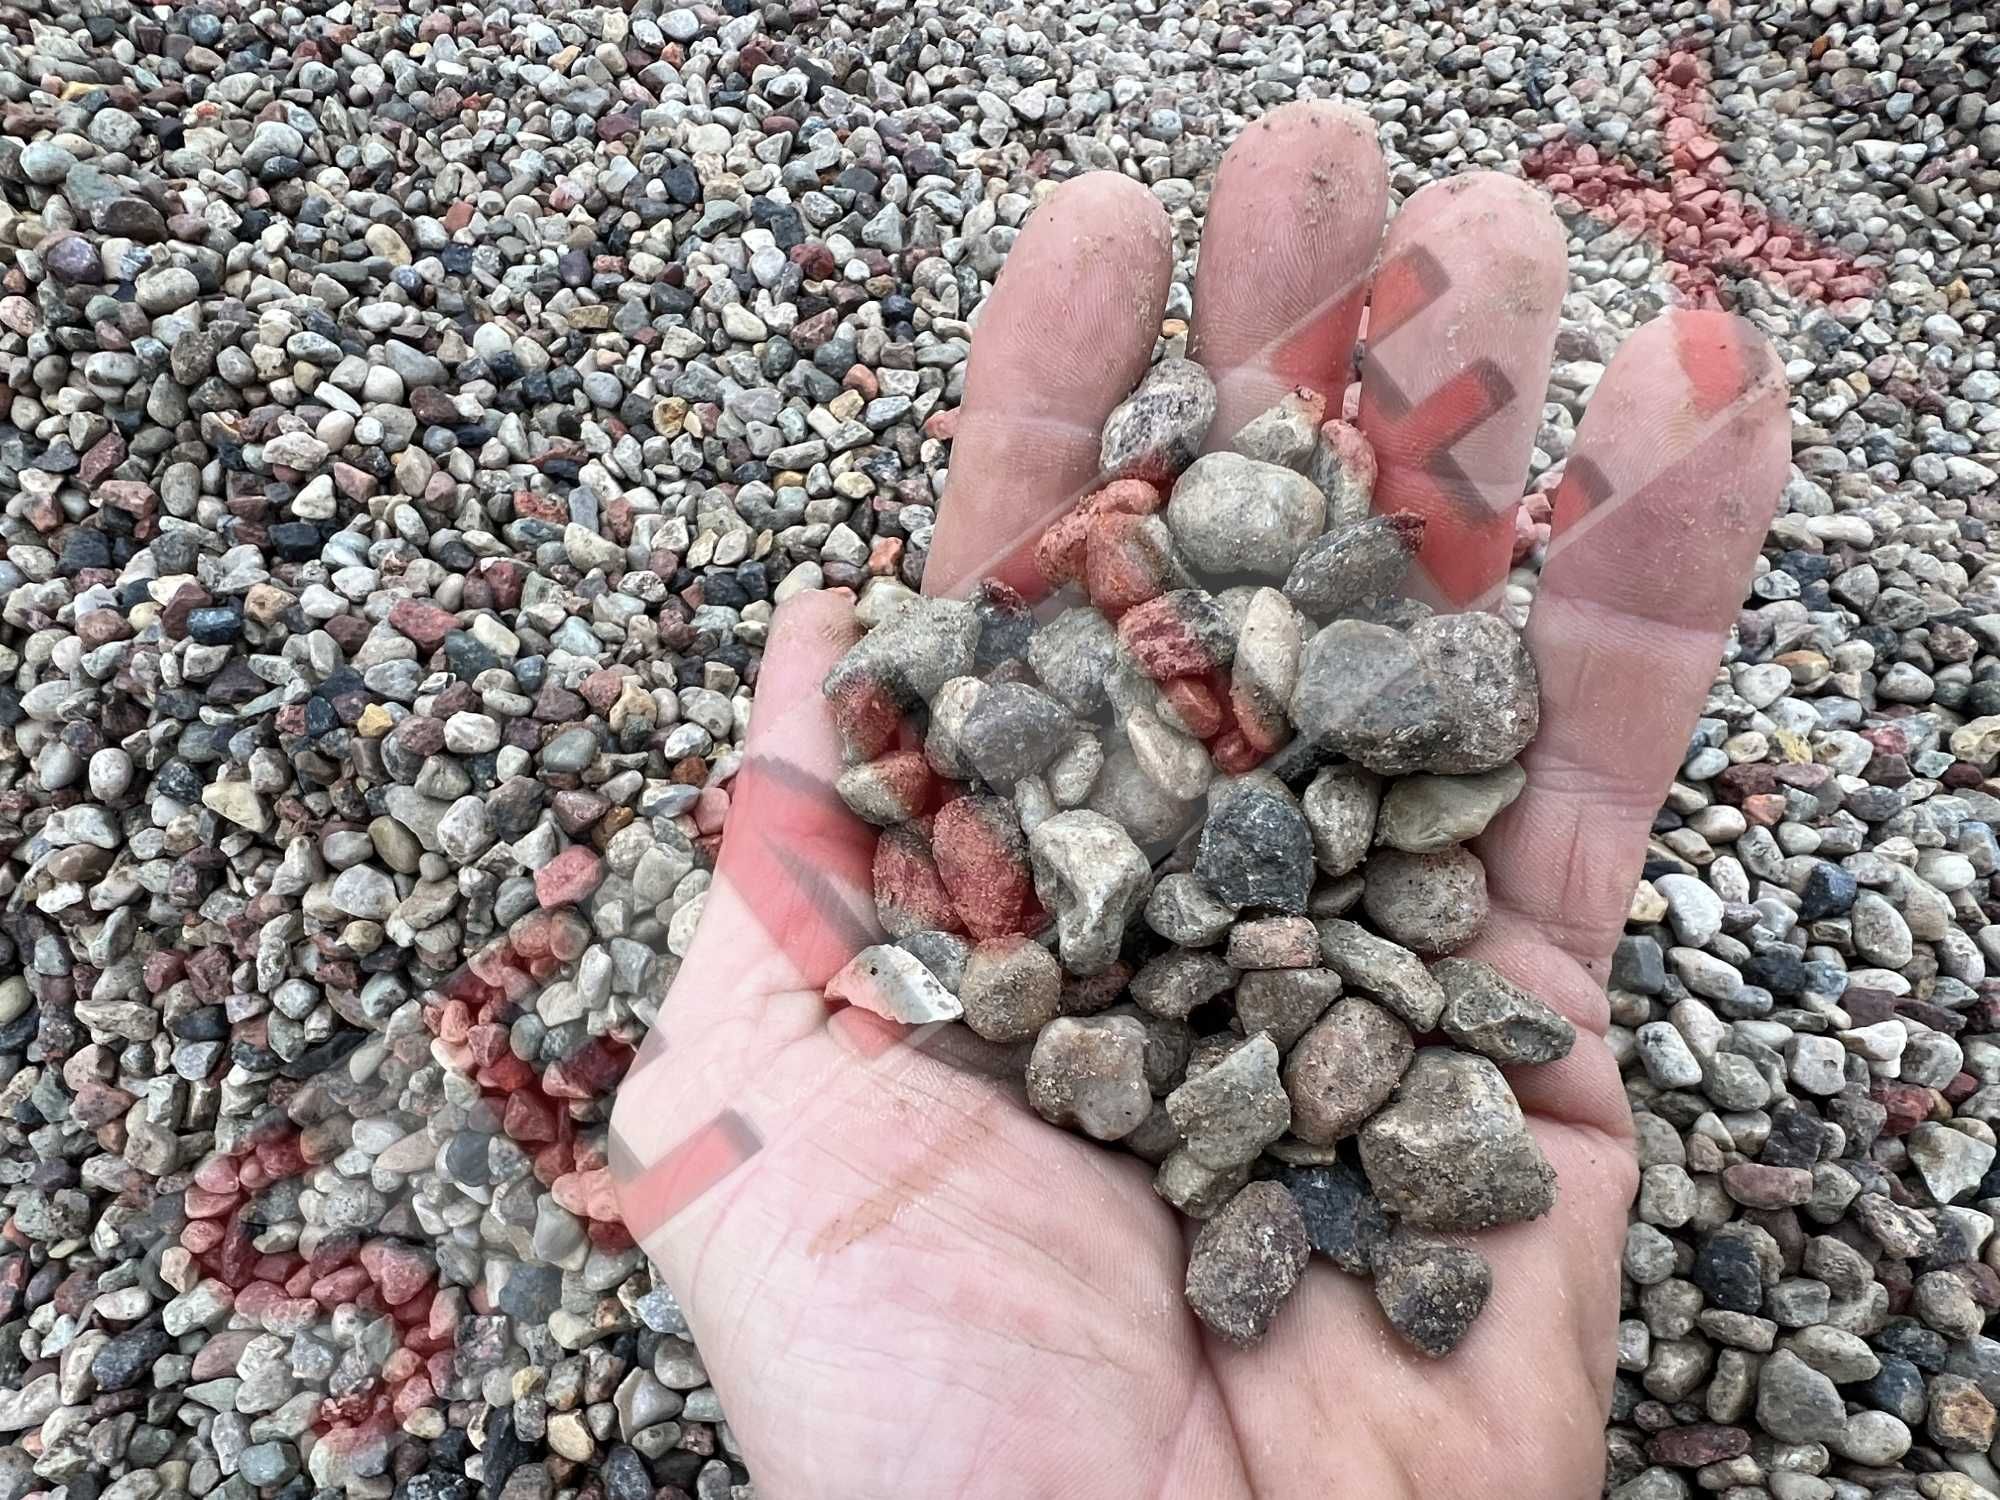 Ziemia Piasek żwir kamień płukany kruszywa pospółka piach gruz kliniec